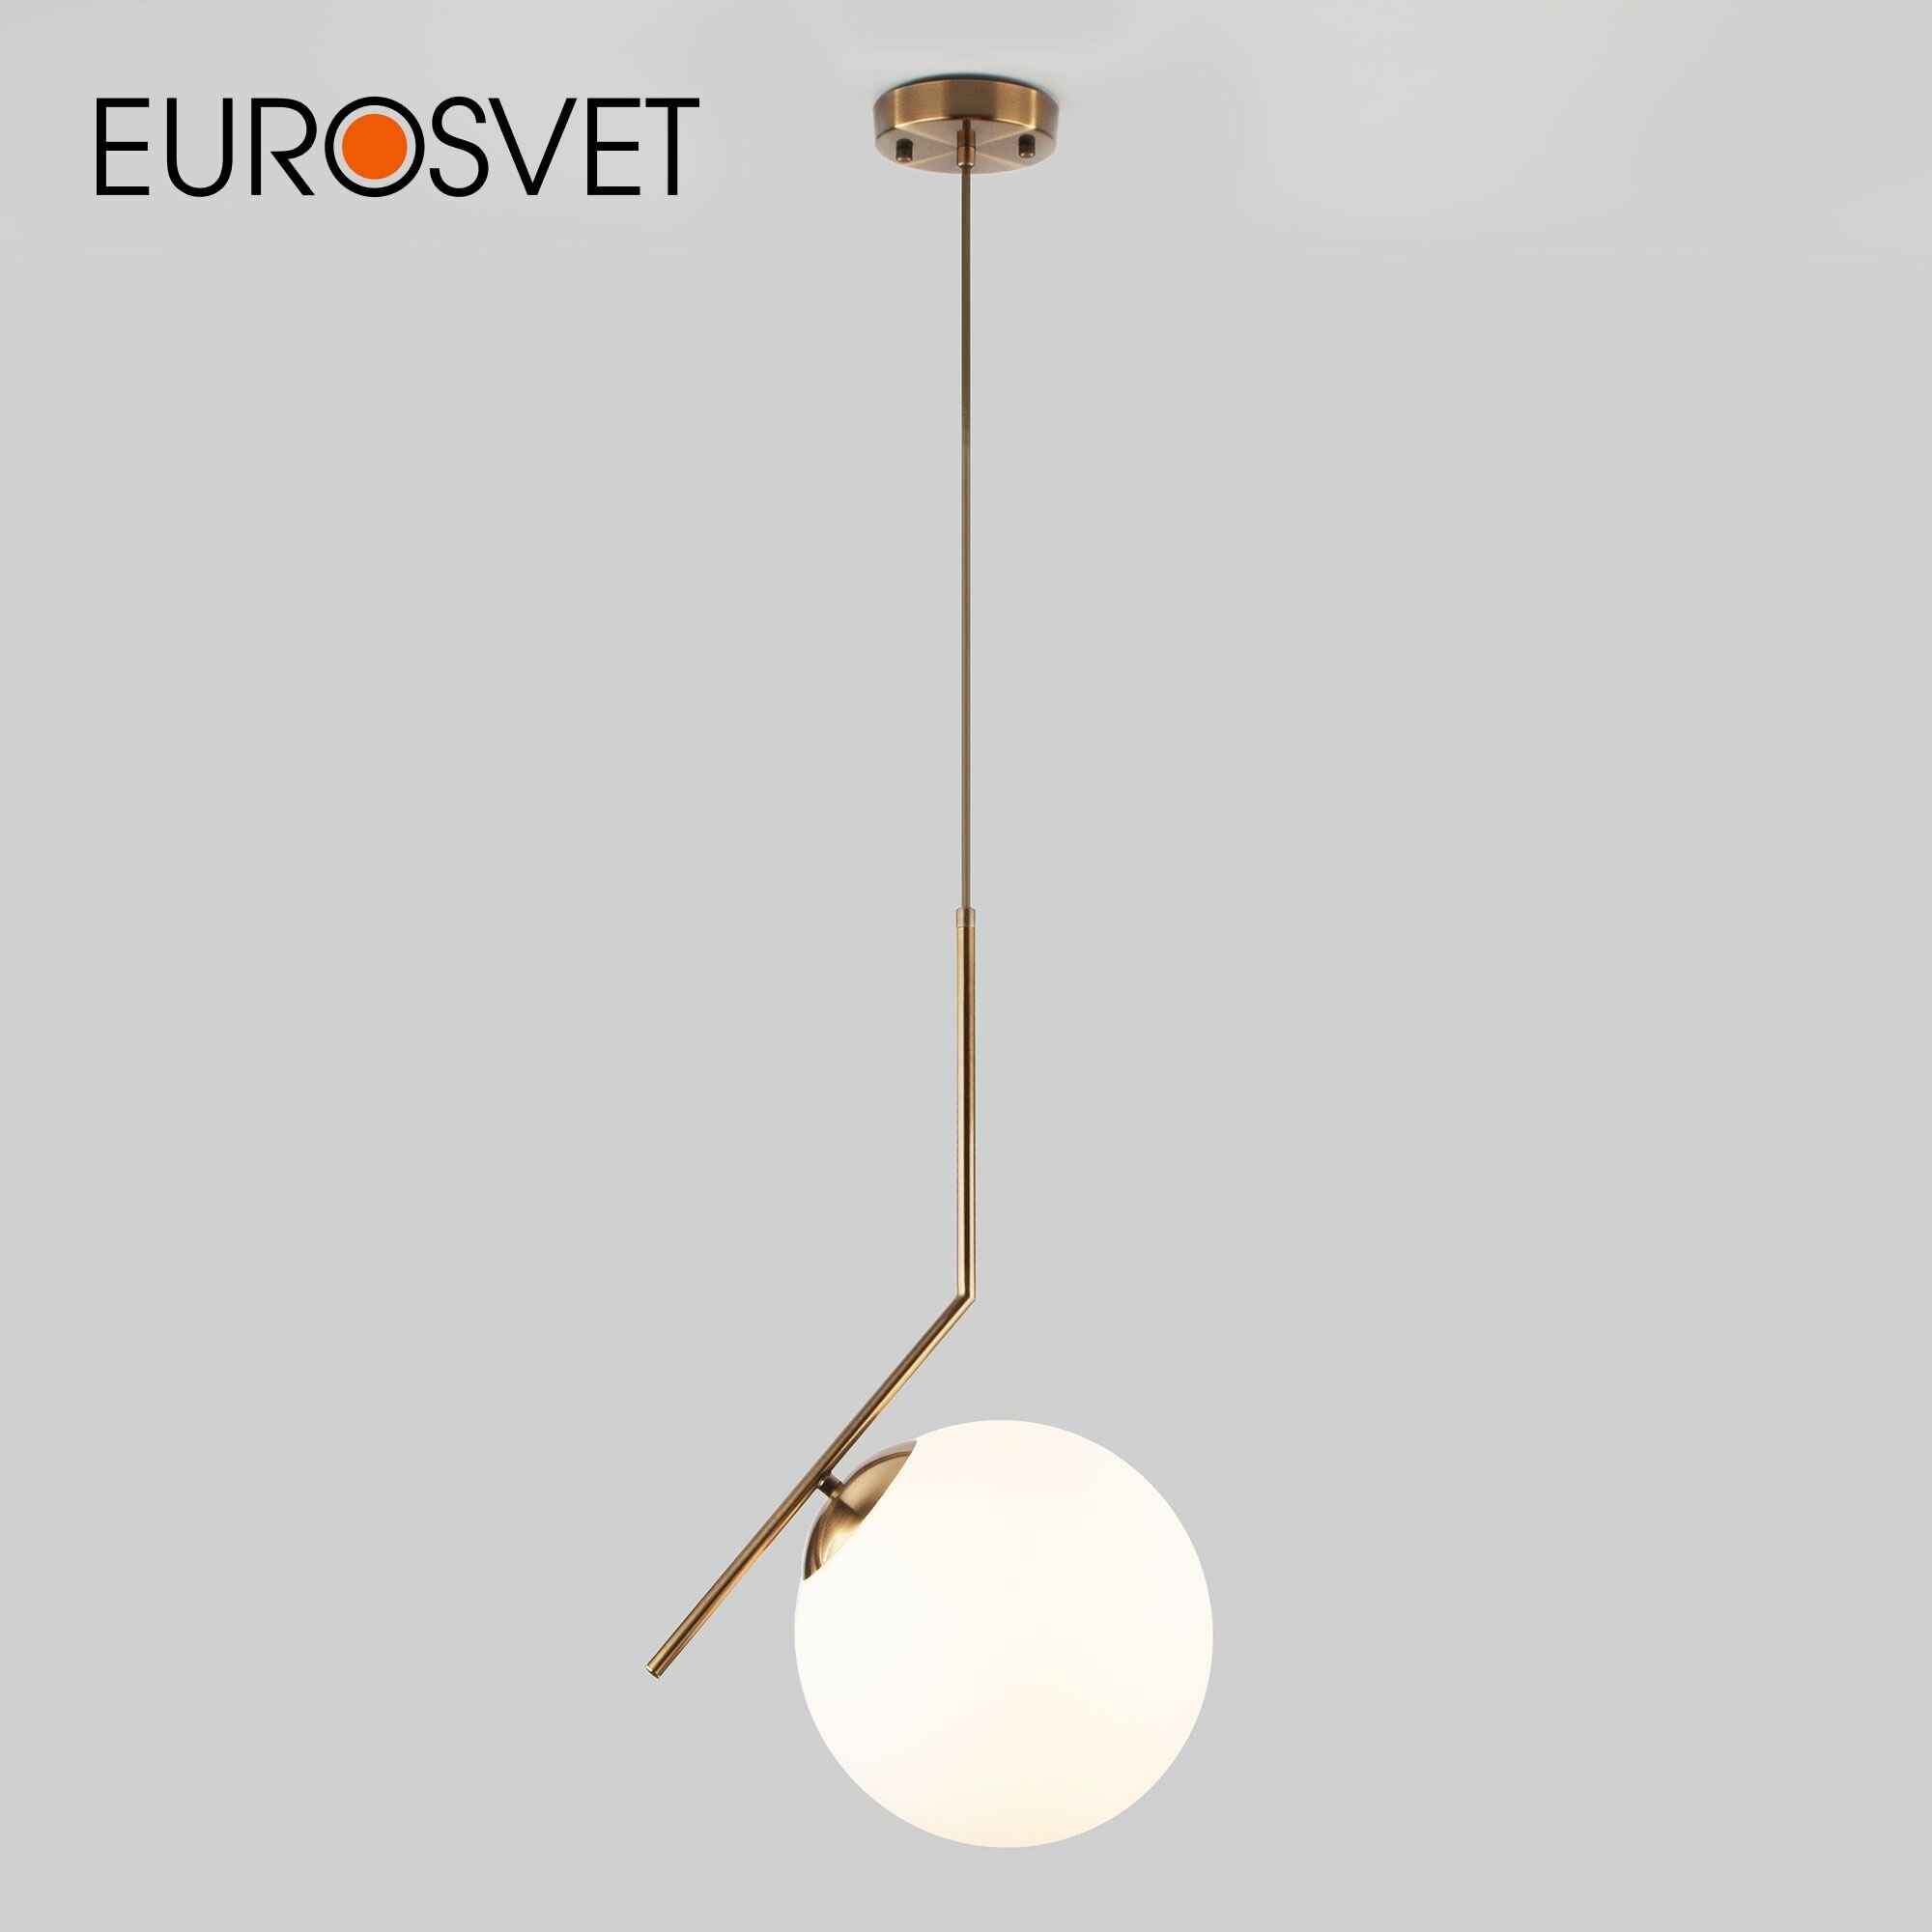 Потолочный светильник Eurosvet Frost 50153/1, E27, 60 Вт, кол-во ламп: 1 шт., цвет: латунь